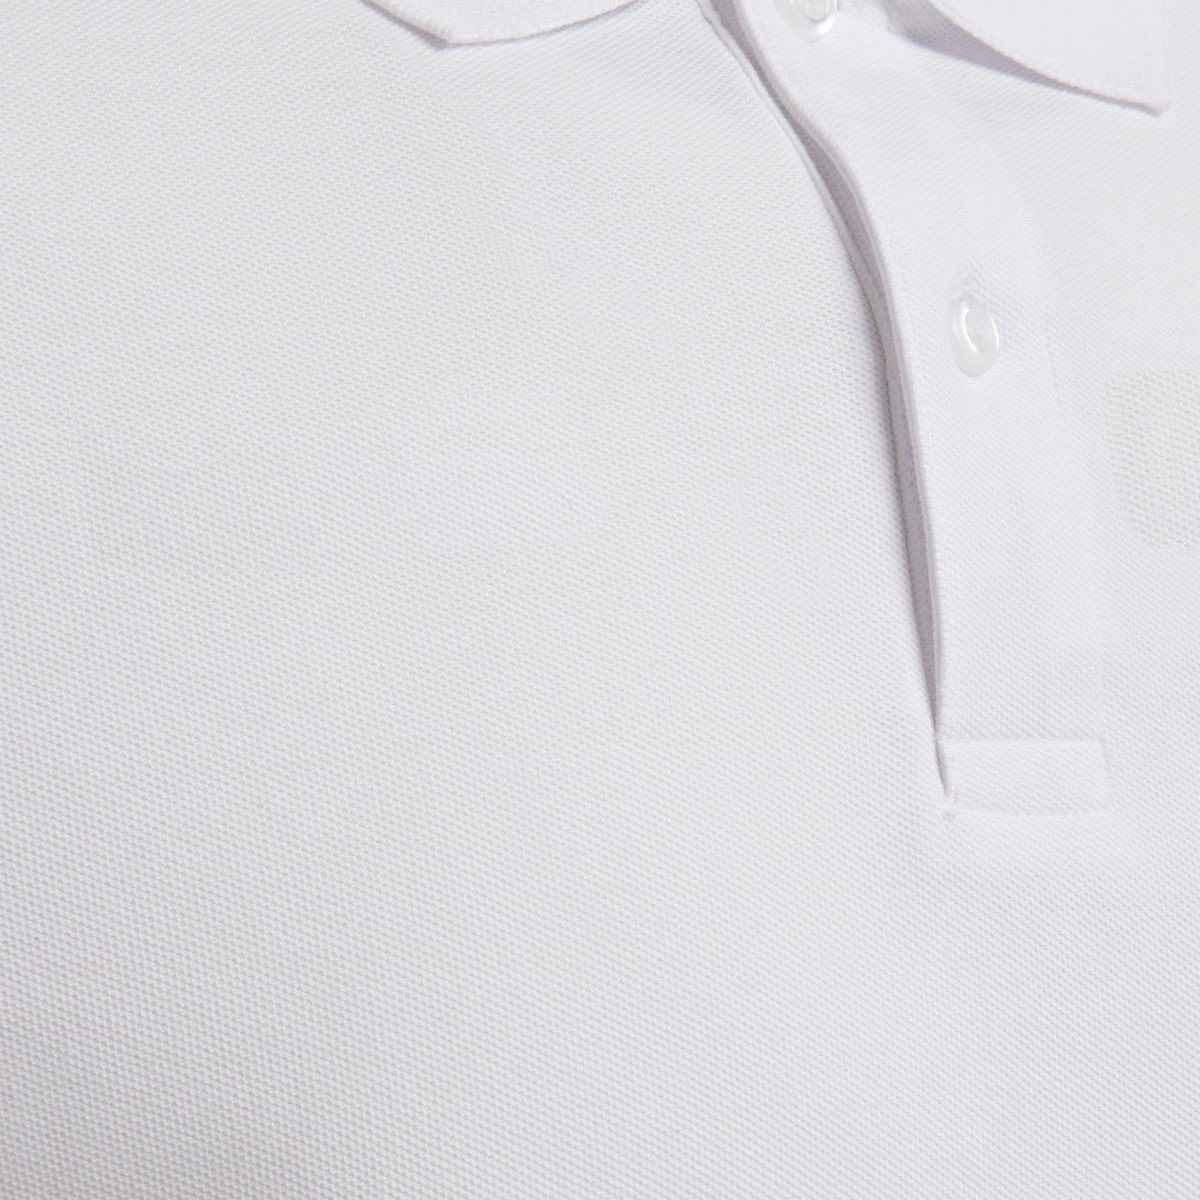 T-Shirt White 9001 POLO - Poloshirts hummel HMLGOMover COTTON Herren